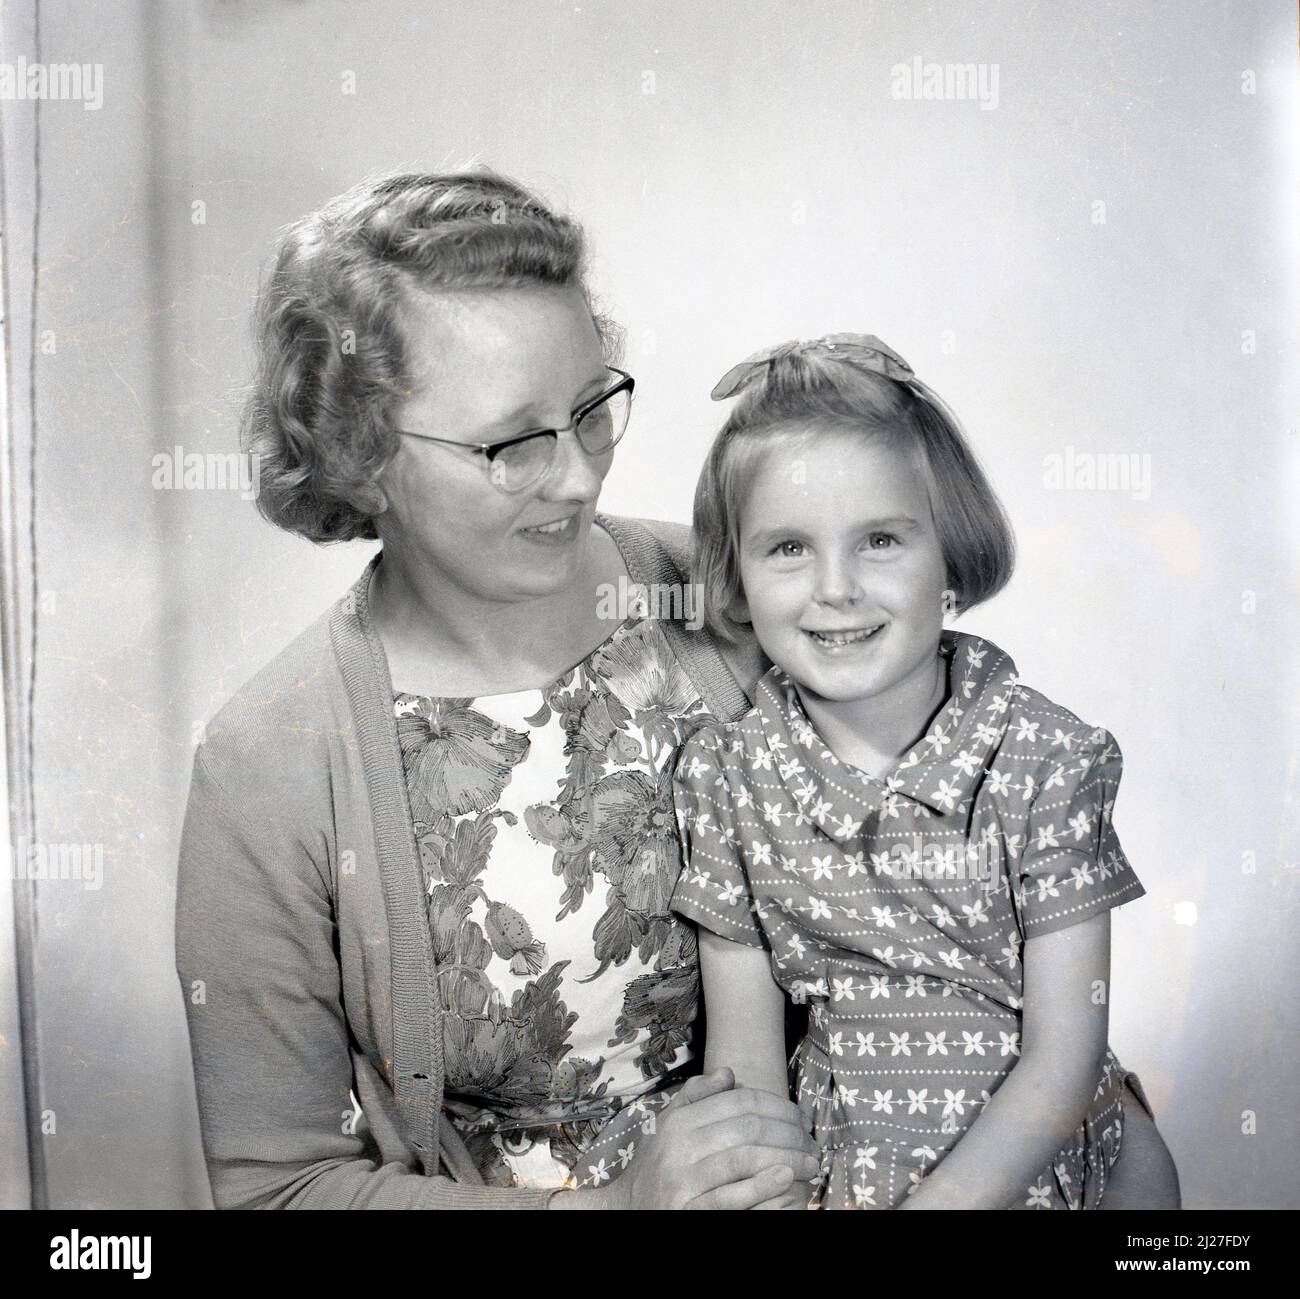 1961, histórica, foto de estudio de la era, una joven dulce con un arco en su pelo, sentada con su madre para su foto, Stockport, Manchester, Inglaterra, Reino Unido. Foto de stock